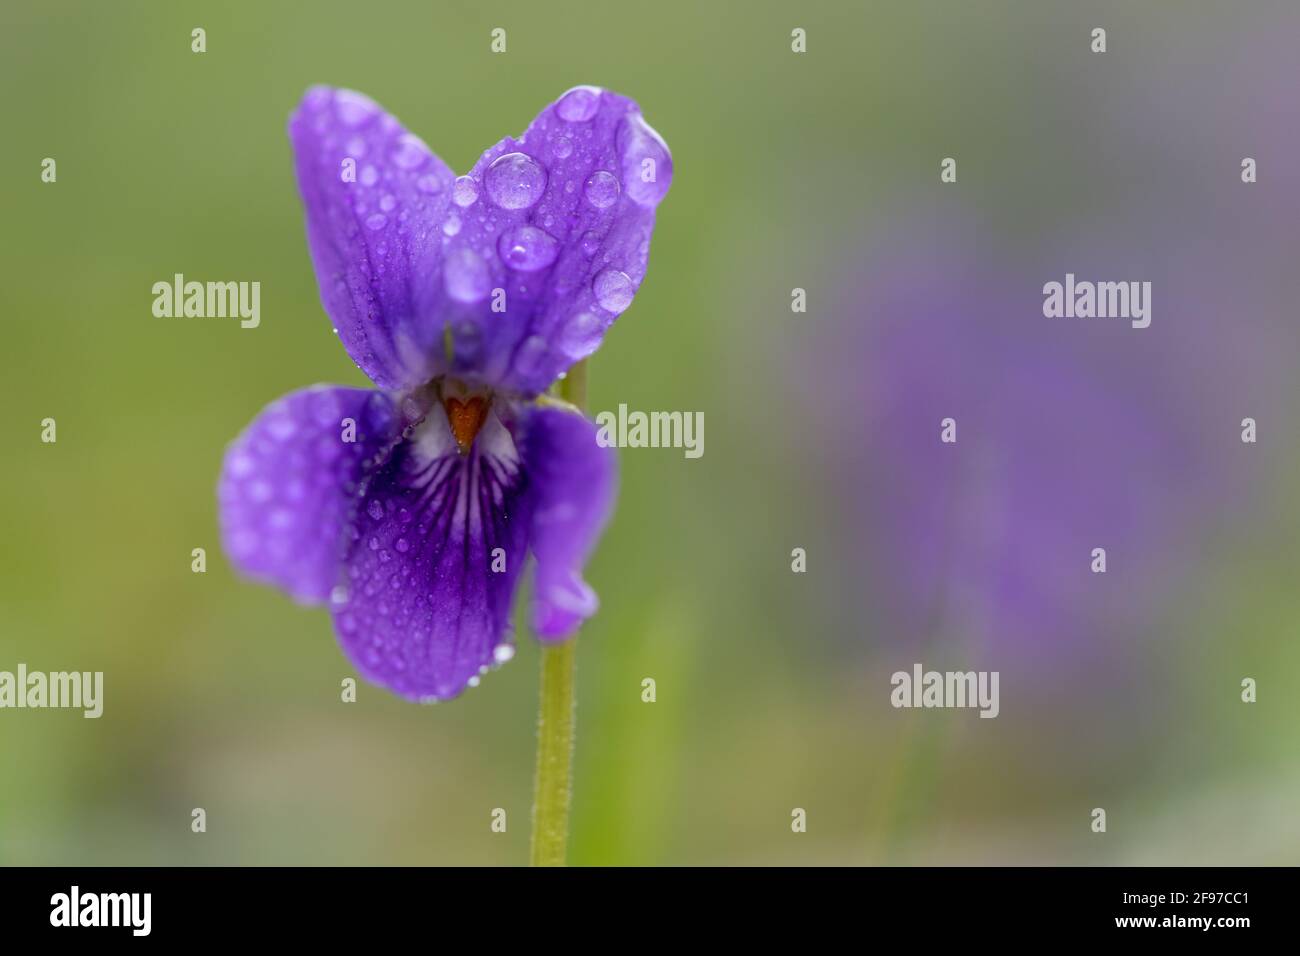 Makroaufnahme eines englischen Veilchens (Viola odorata) Blume bedeckt mit Tau-Tröpfchen Stockfoto